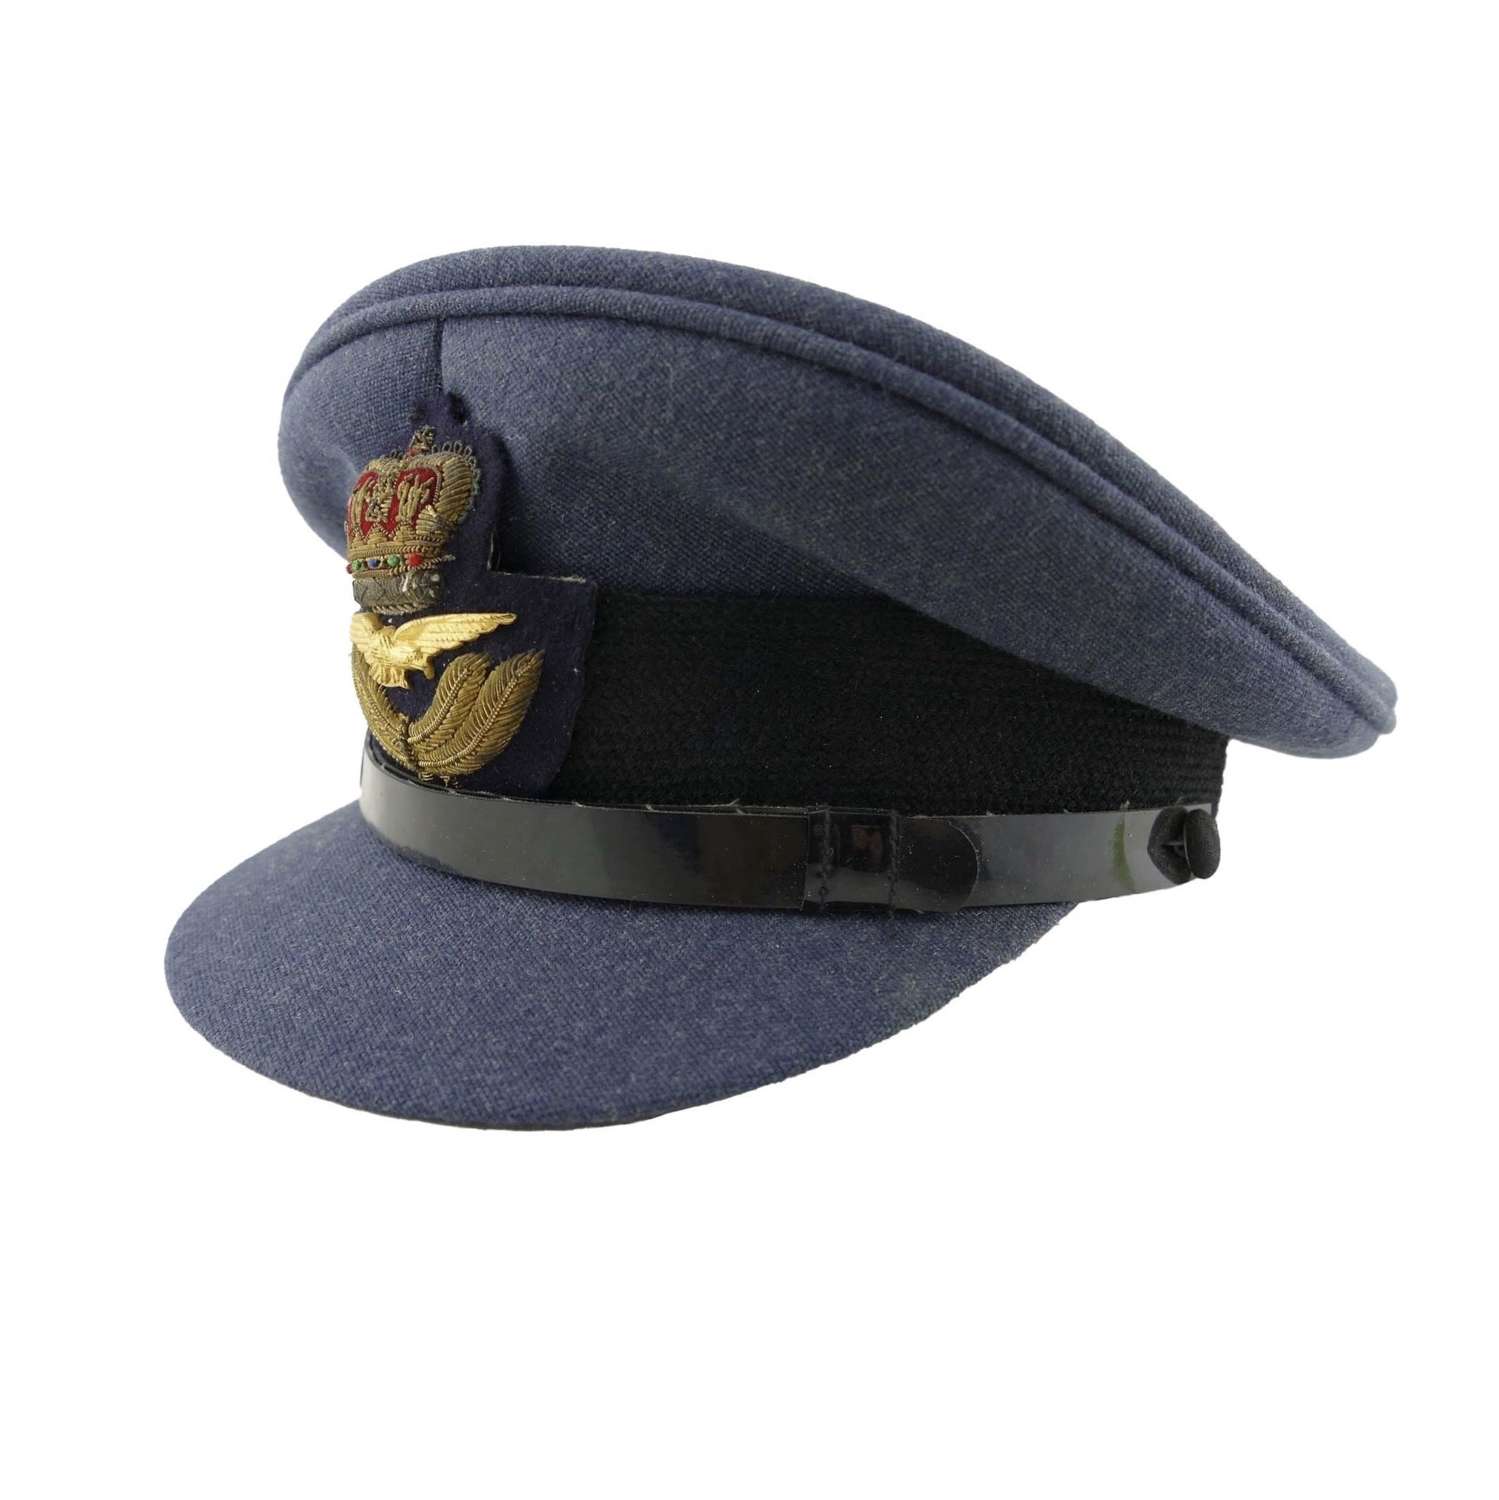 RAF officer rank service dress cap